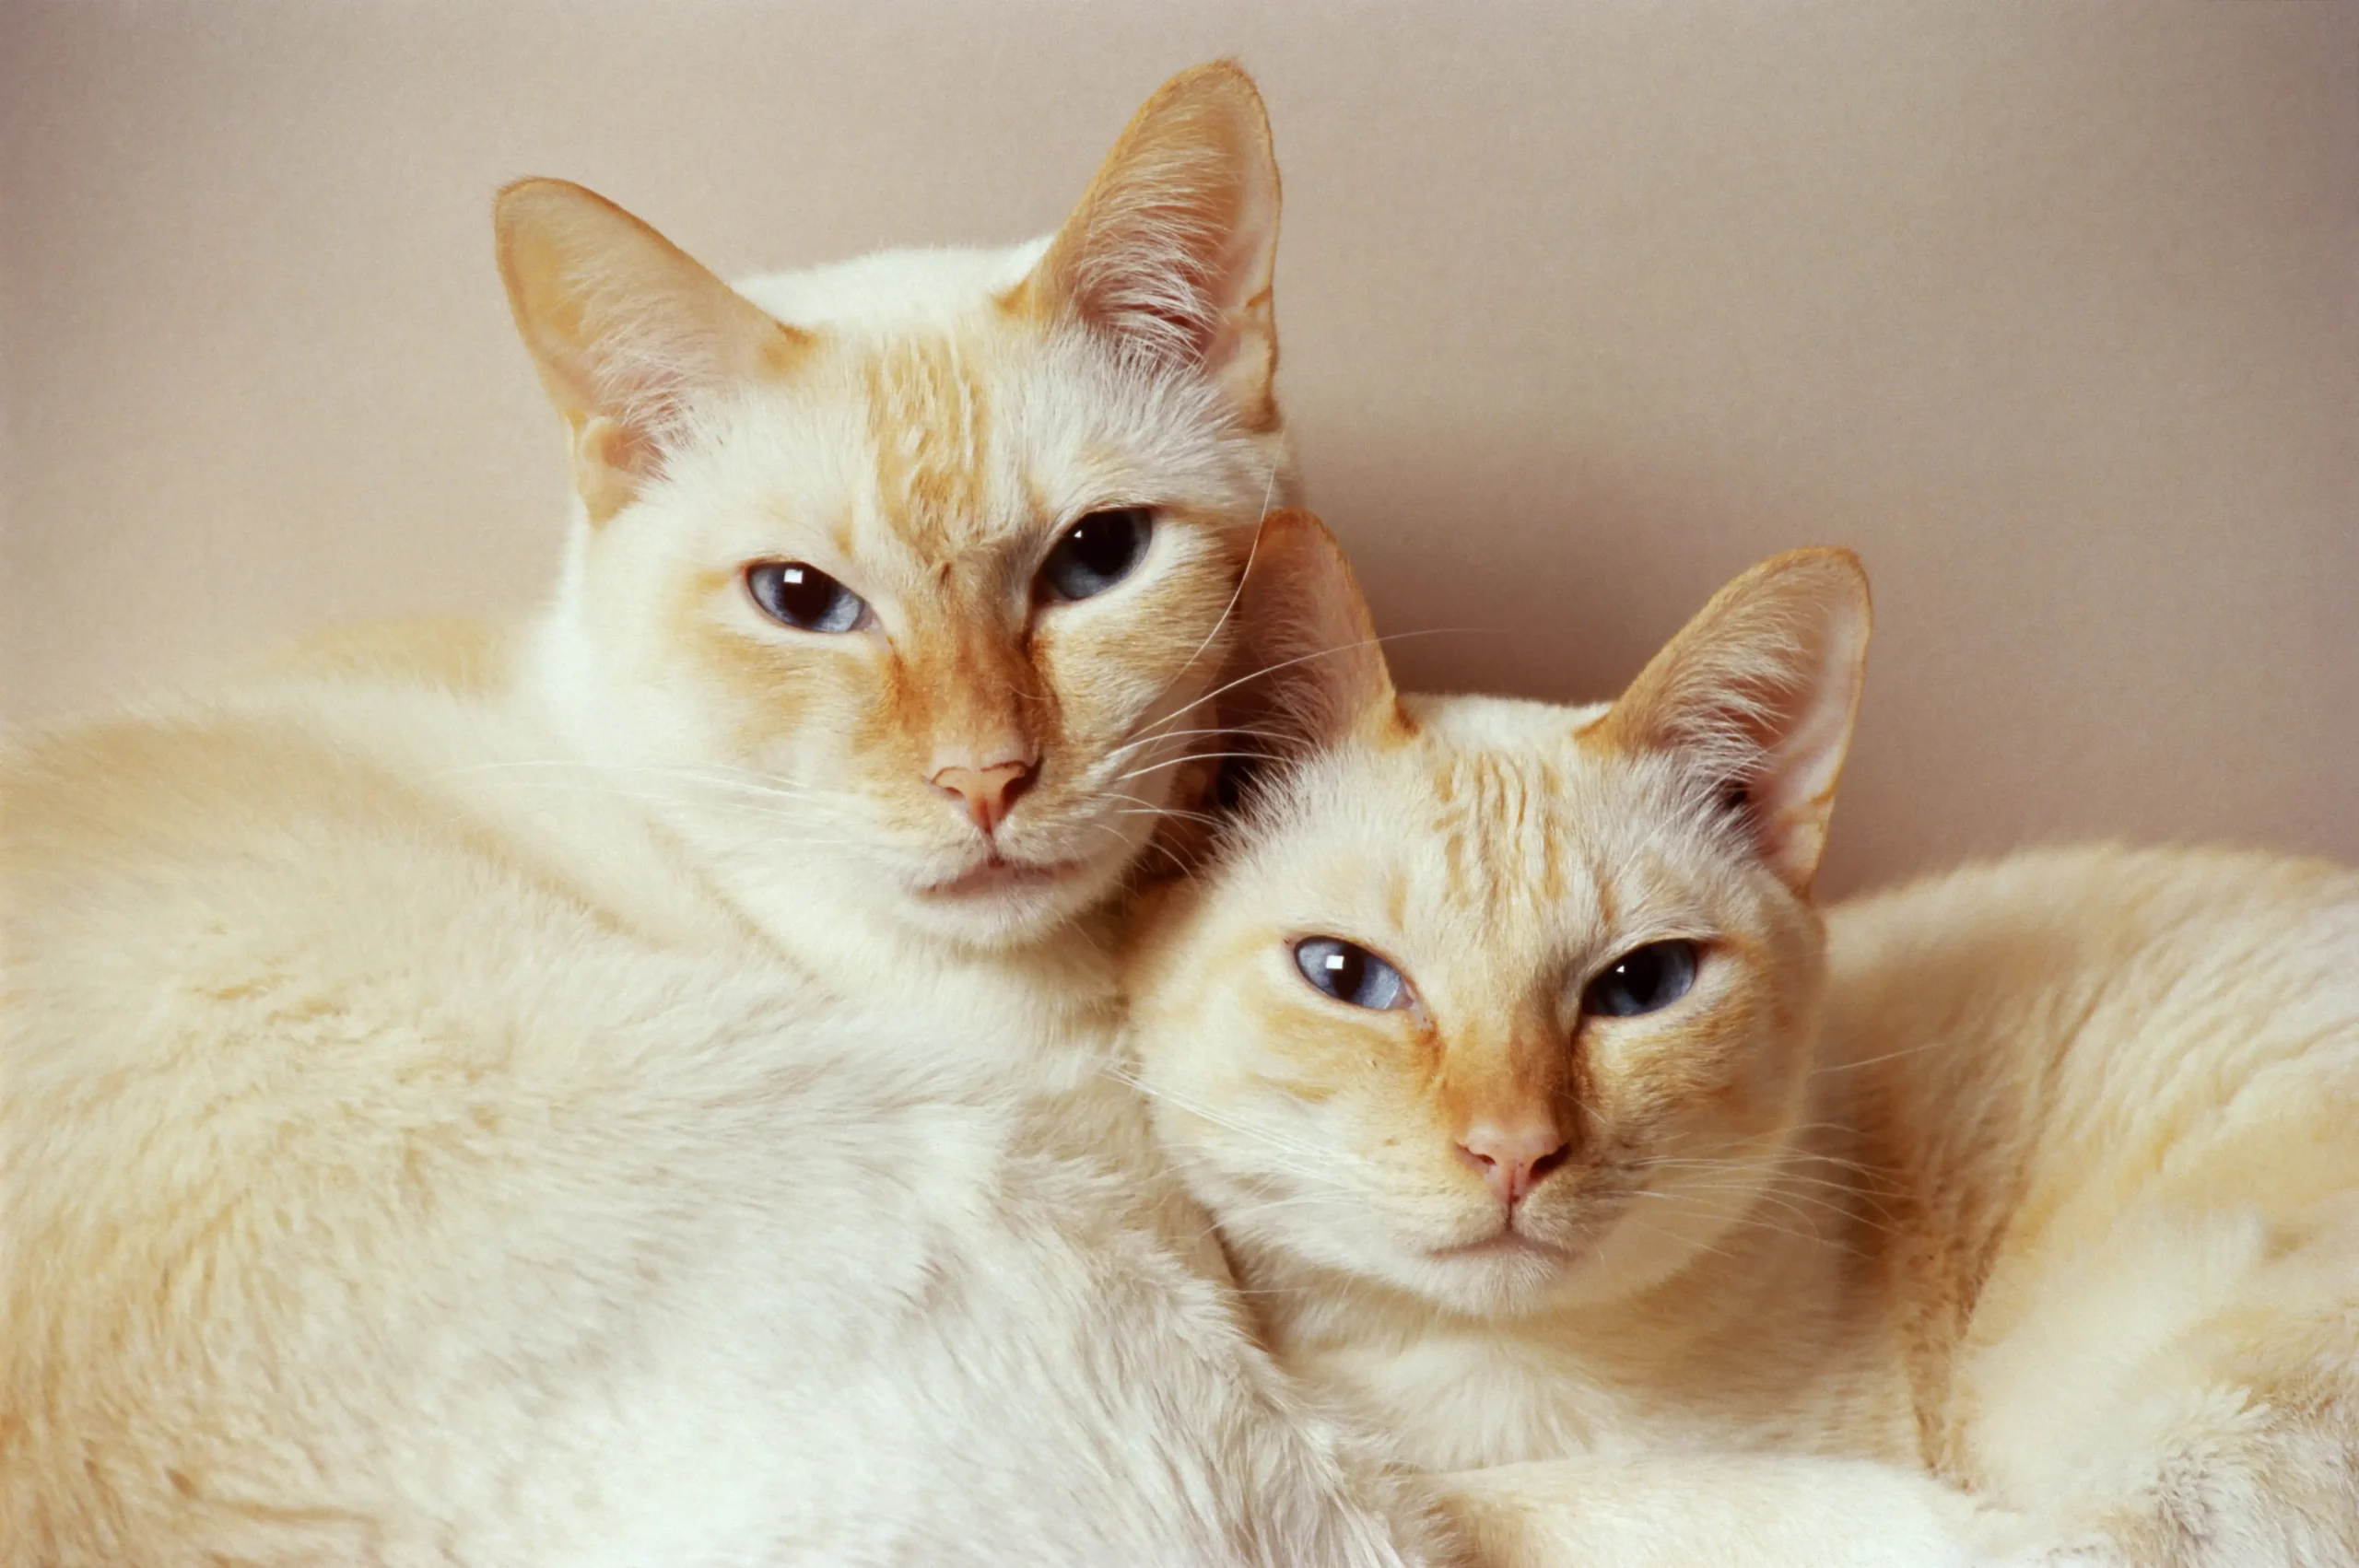 Dois gato parecidos, de pêlo branco com traços marrons, encaram a câmera juntos.